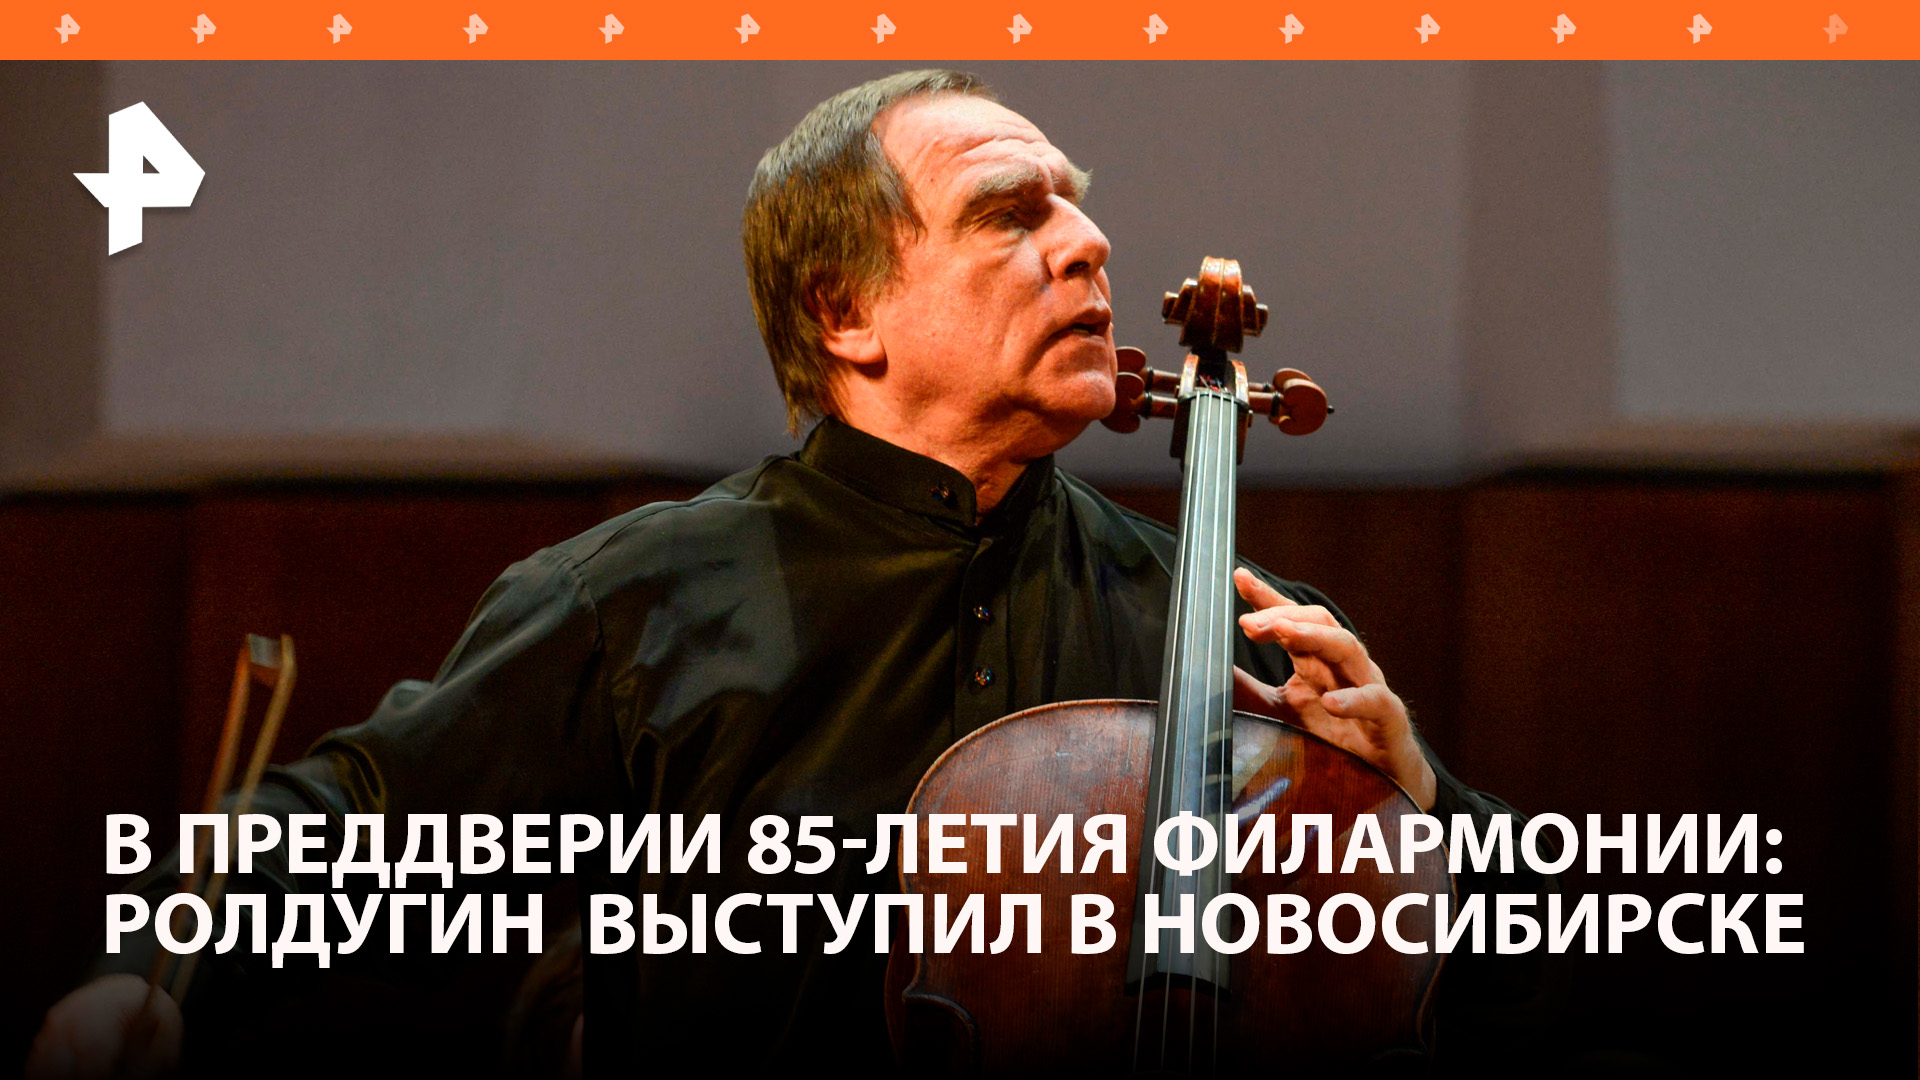 Ролдугин выступил в Новосибирской филармонии к 100-летию Арнольда Каца